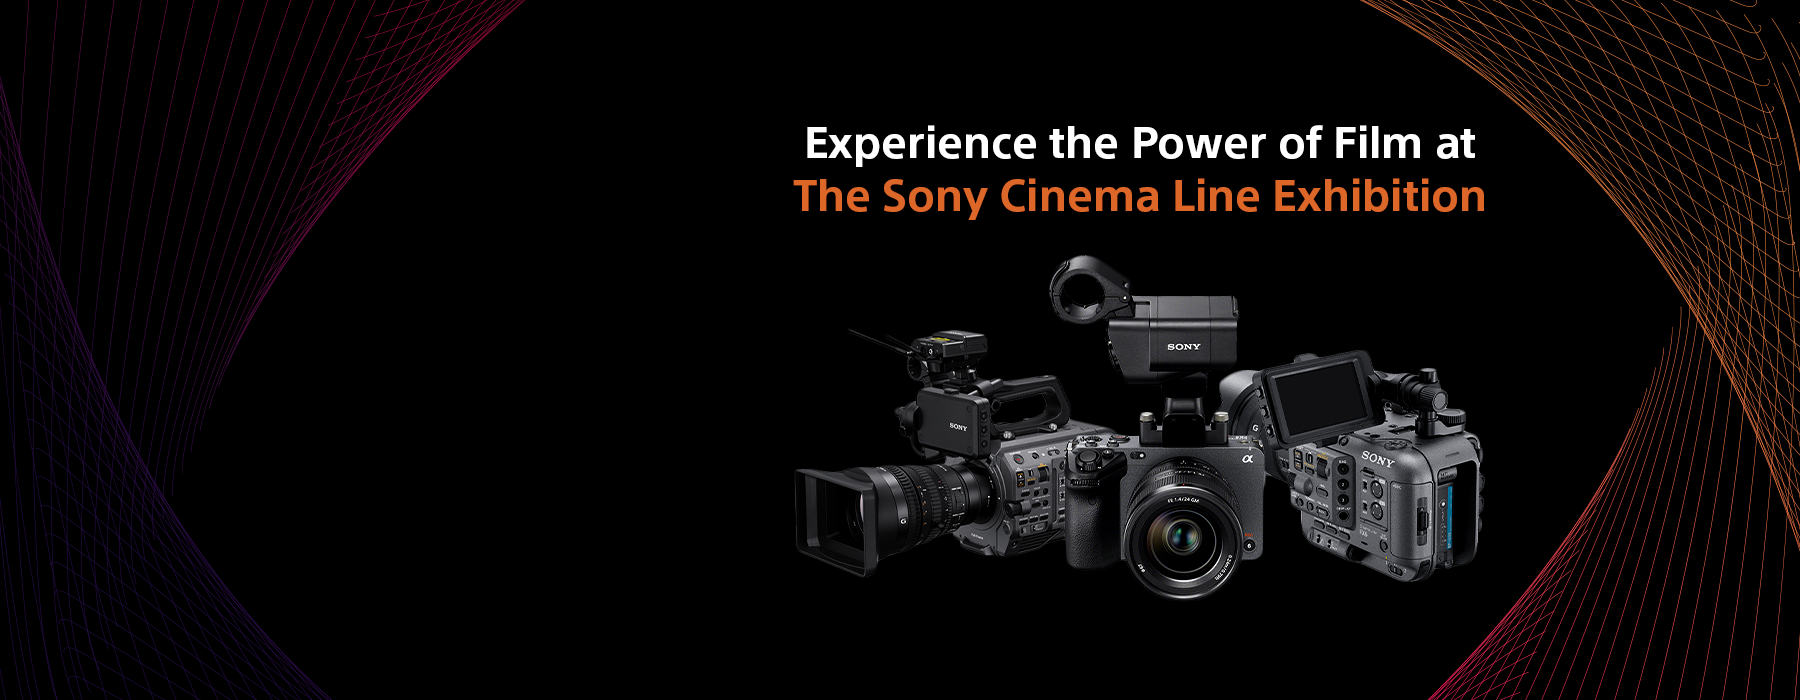 Sony Cinema Line Event & Exhibition